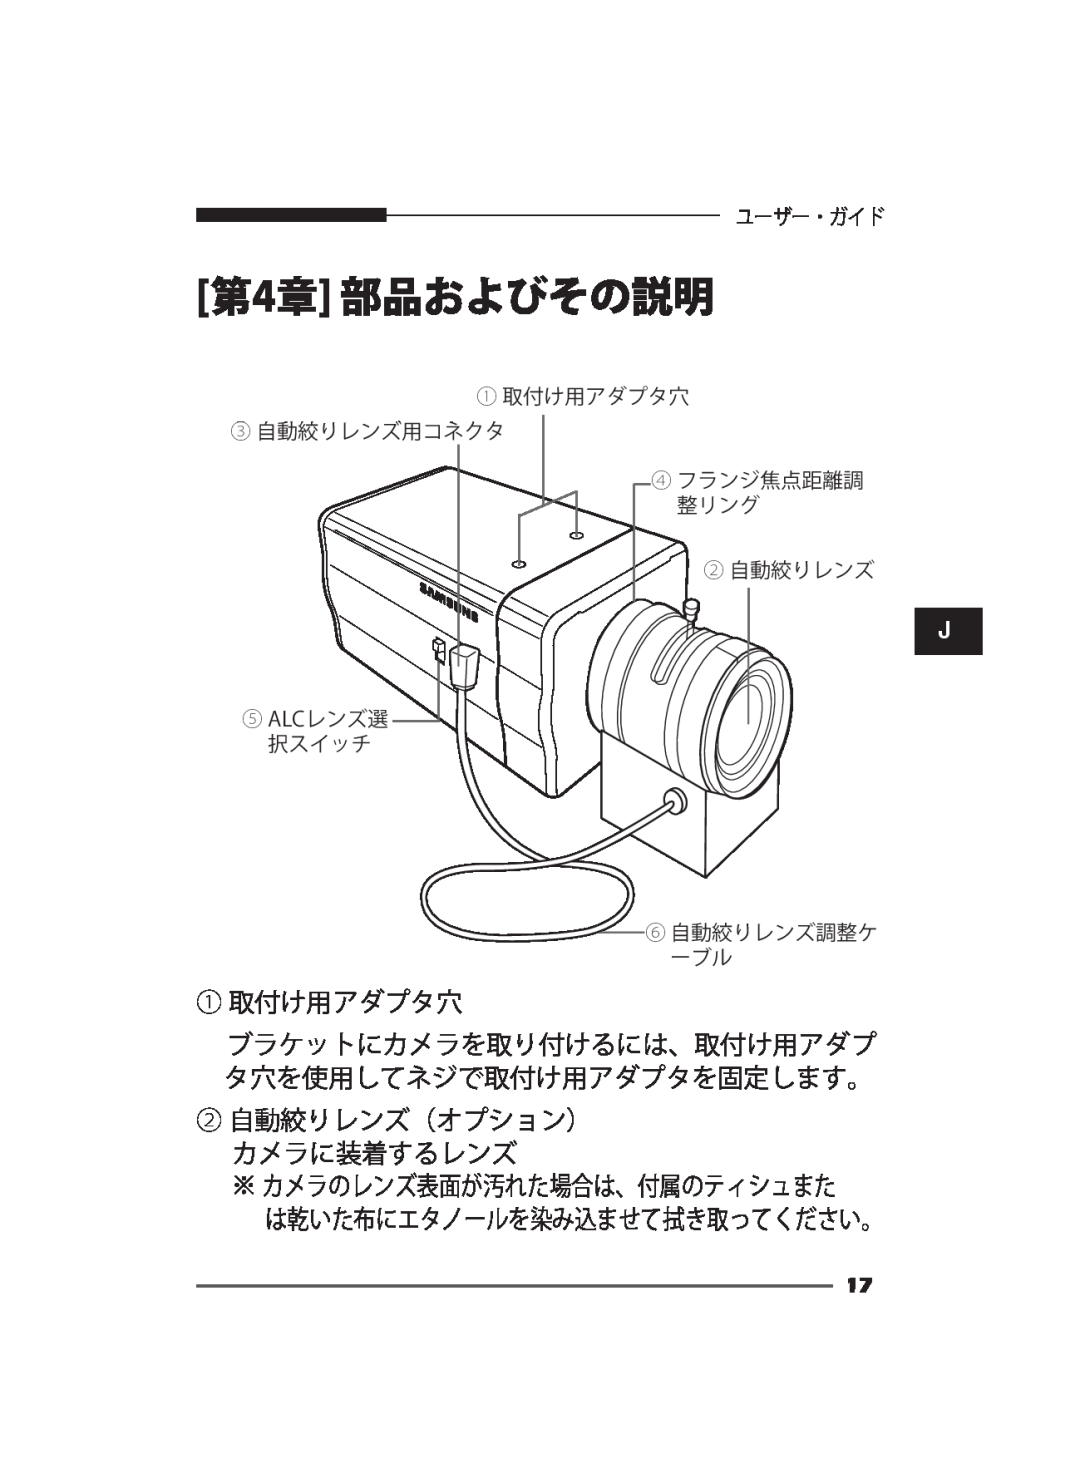 Samsung SCC-B2011P, SCC-B2311P, SCC-B2311N ① 取付け用アダプタ穴 ブラケットにカメラを取り付けるには、取付け用アダプ タ穴を使用してネジで取付け用アダプタを固定します。, 第4章 部品およびその説明 